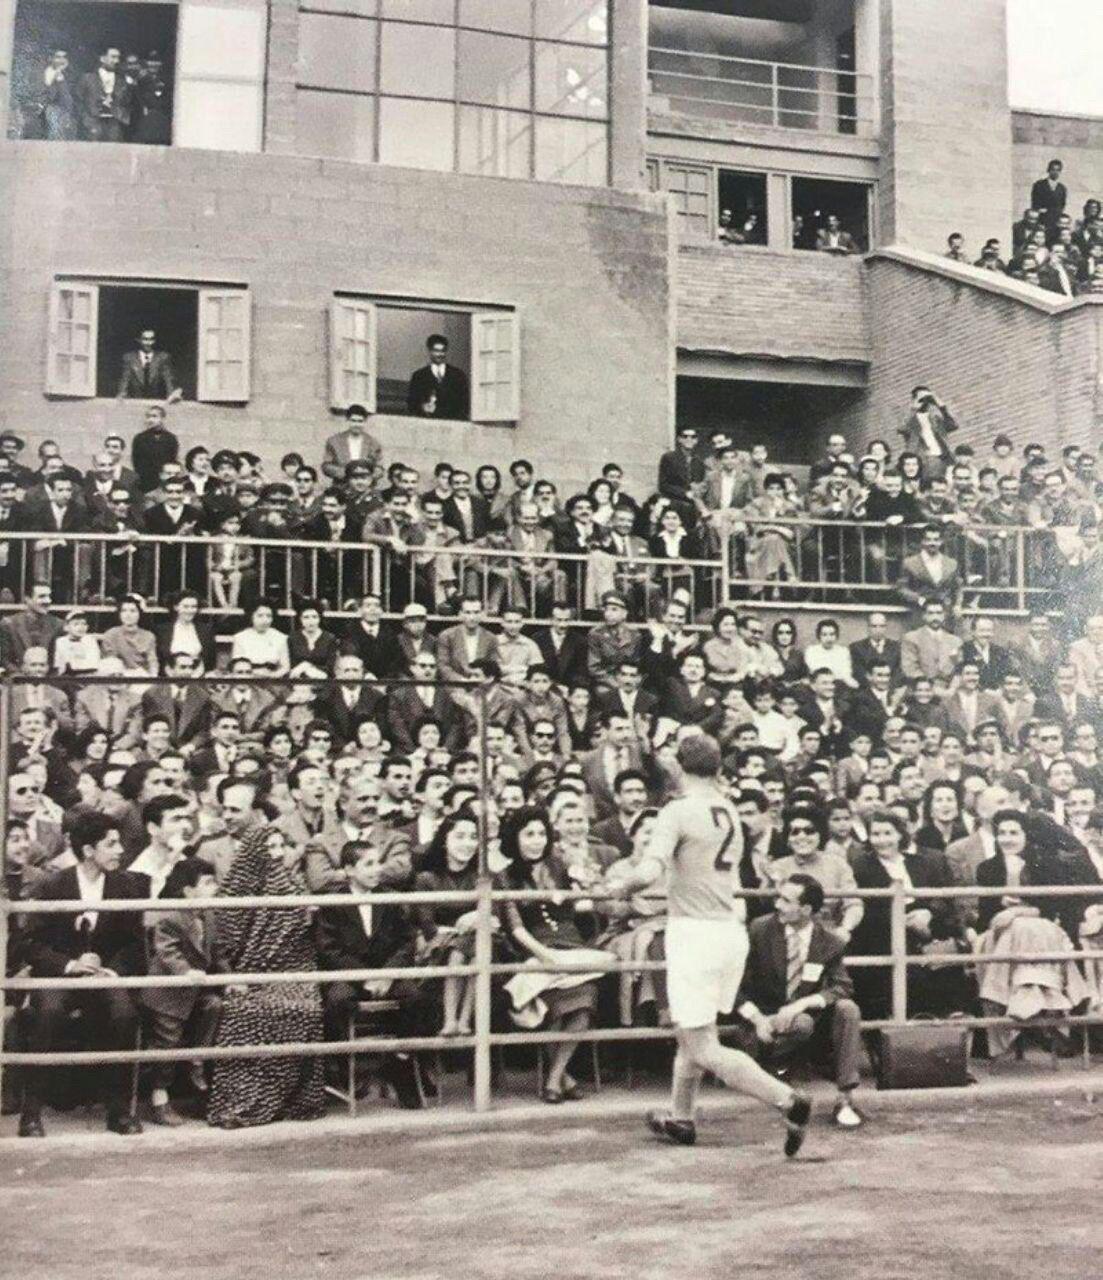 حضور زنان در دهه ۴۰ برای دیدن بازی فوتبال در ورزشگاه امجدیه/عکس